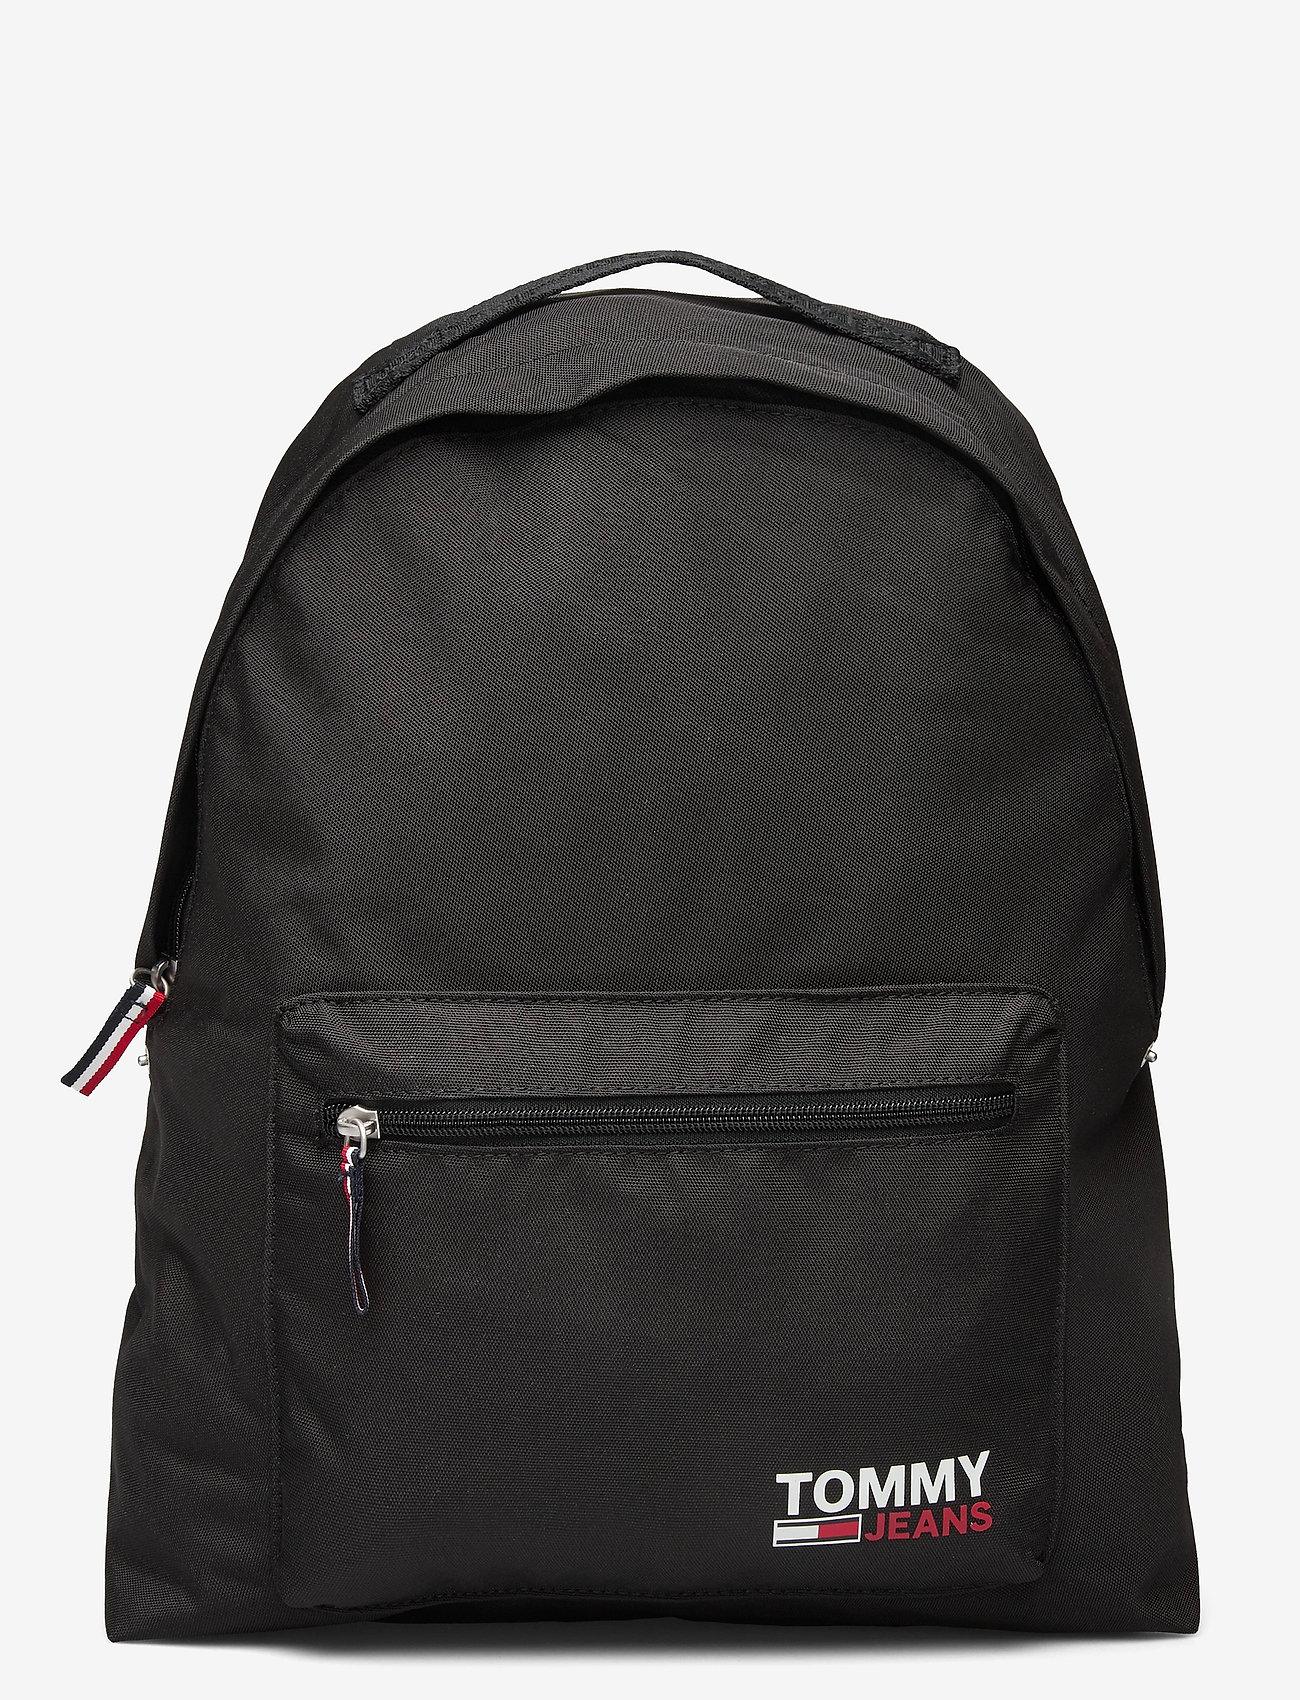 tommy hilfiger backpack girls